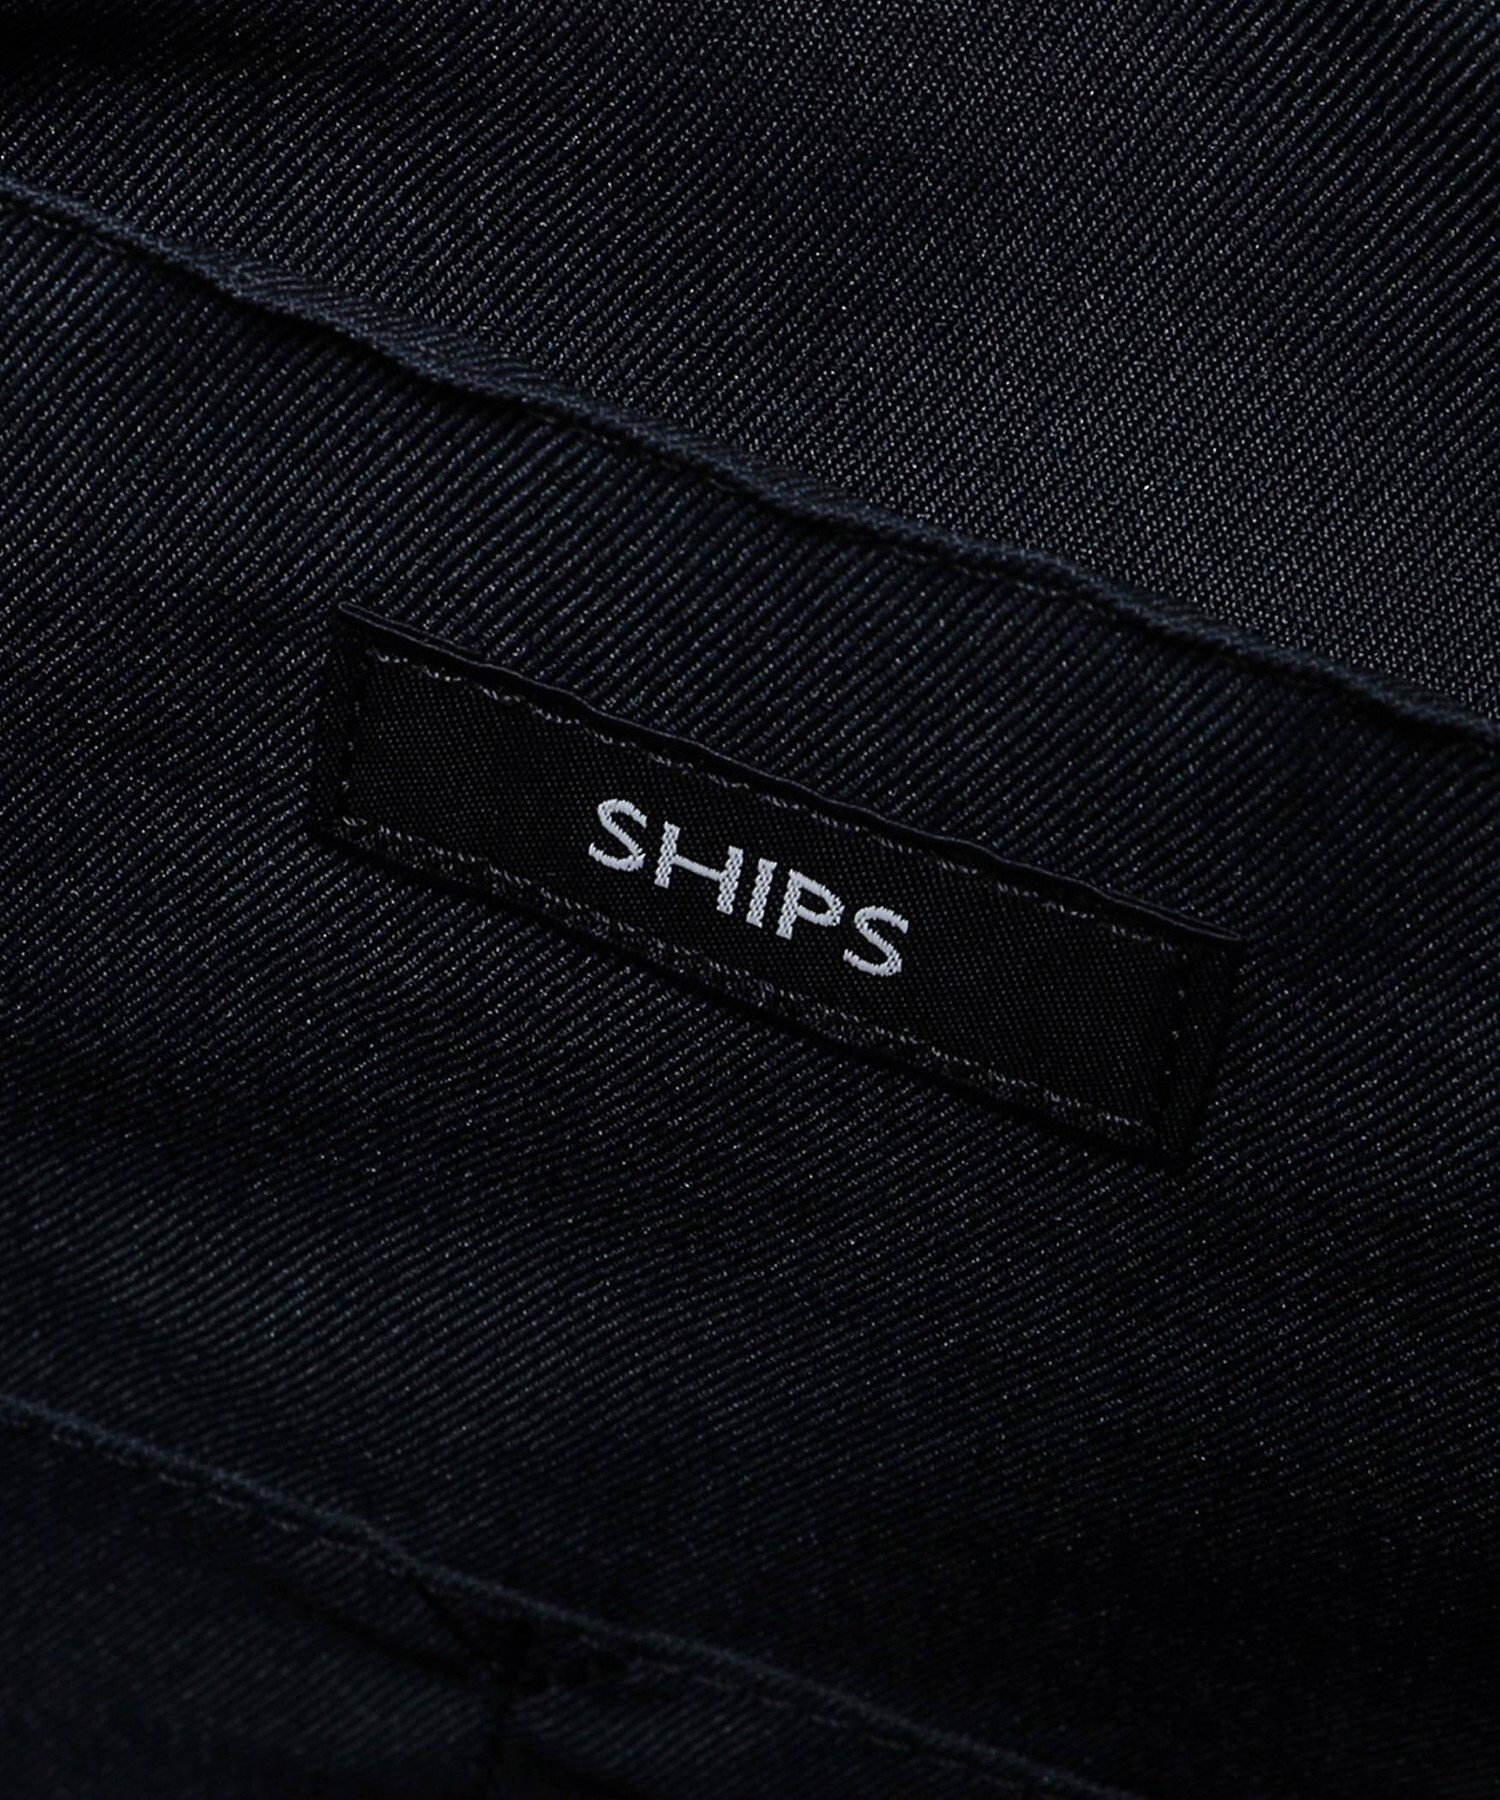 SHIPS: スマート レザー ヴァーティカル トートバッグ